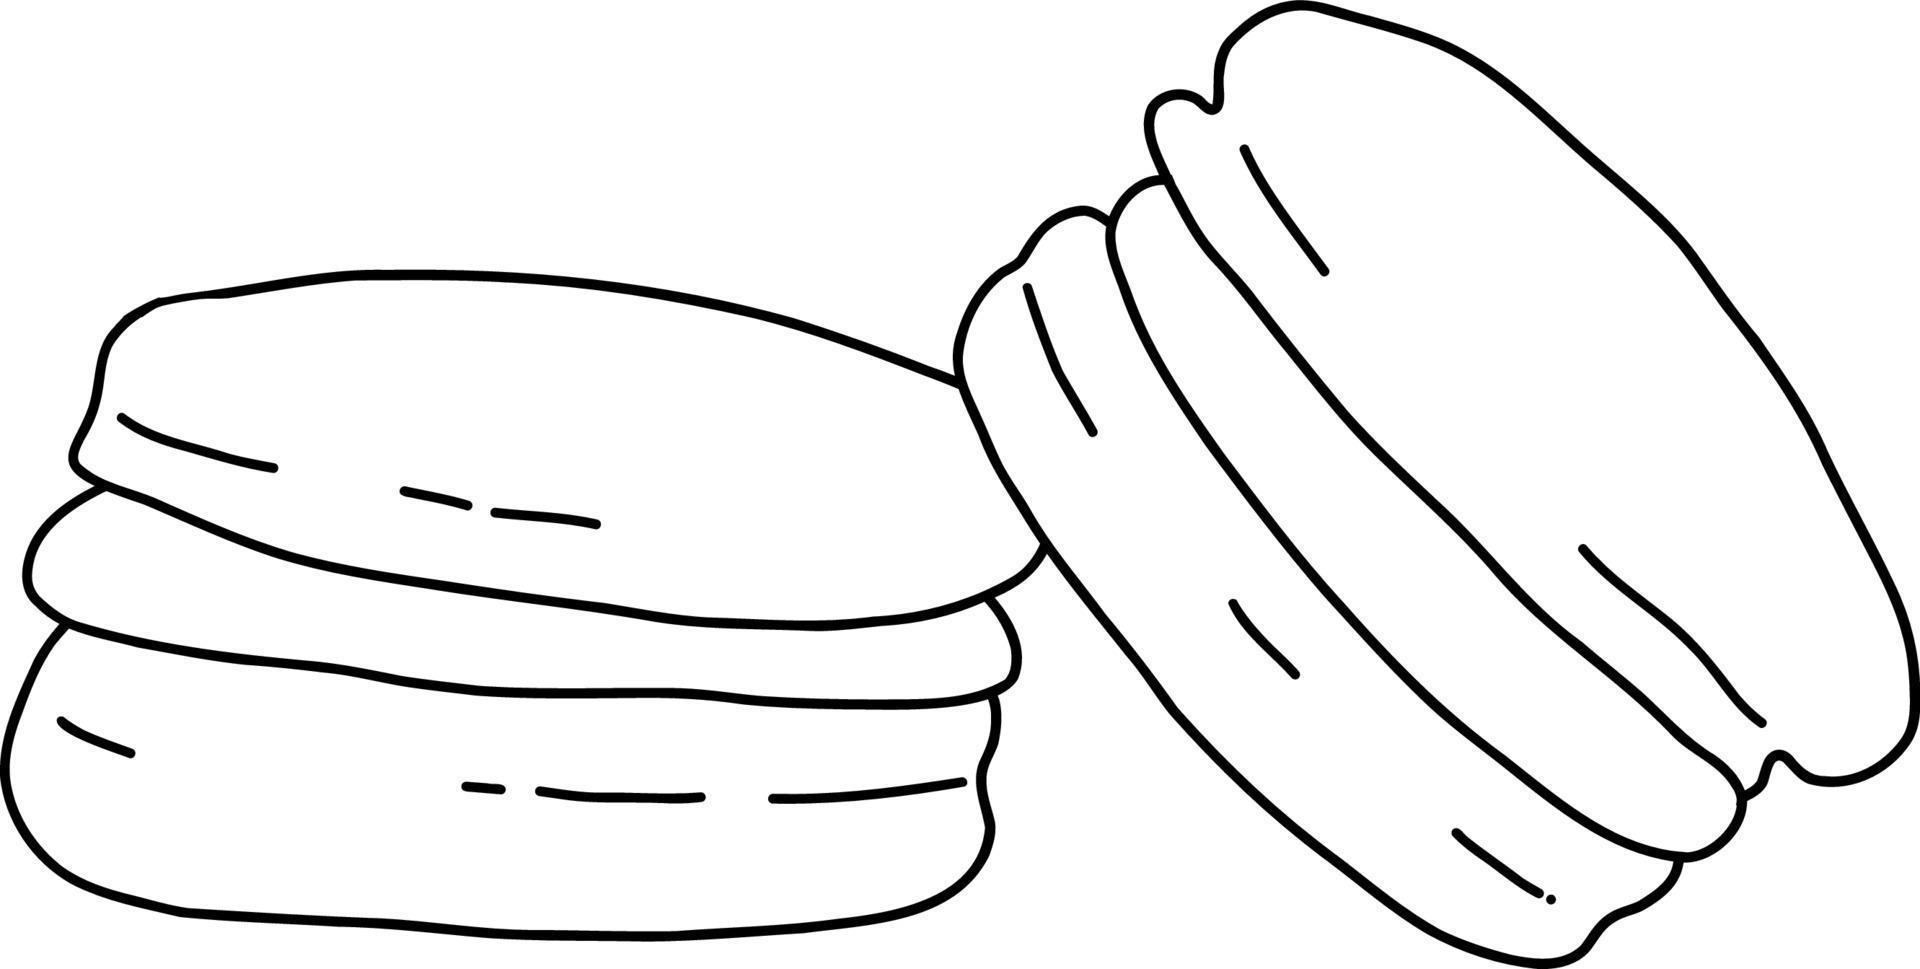 macarons de galletas. ilustración vectorial vector